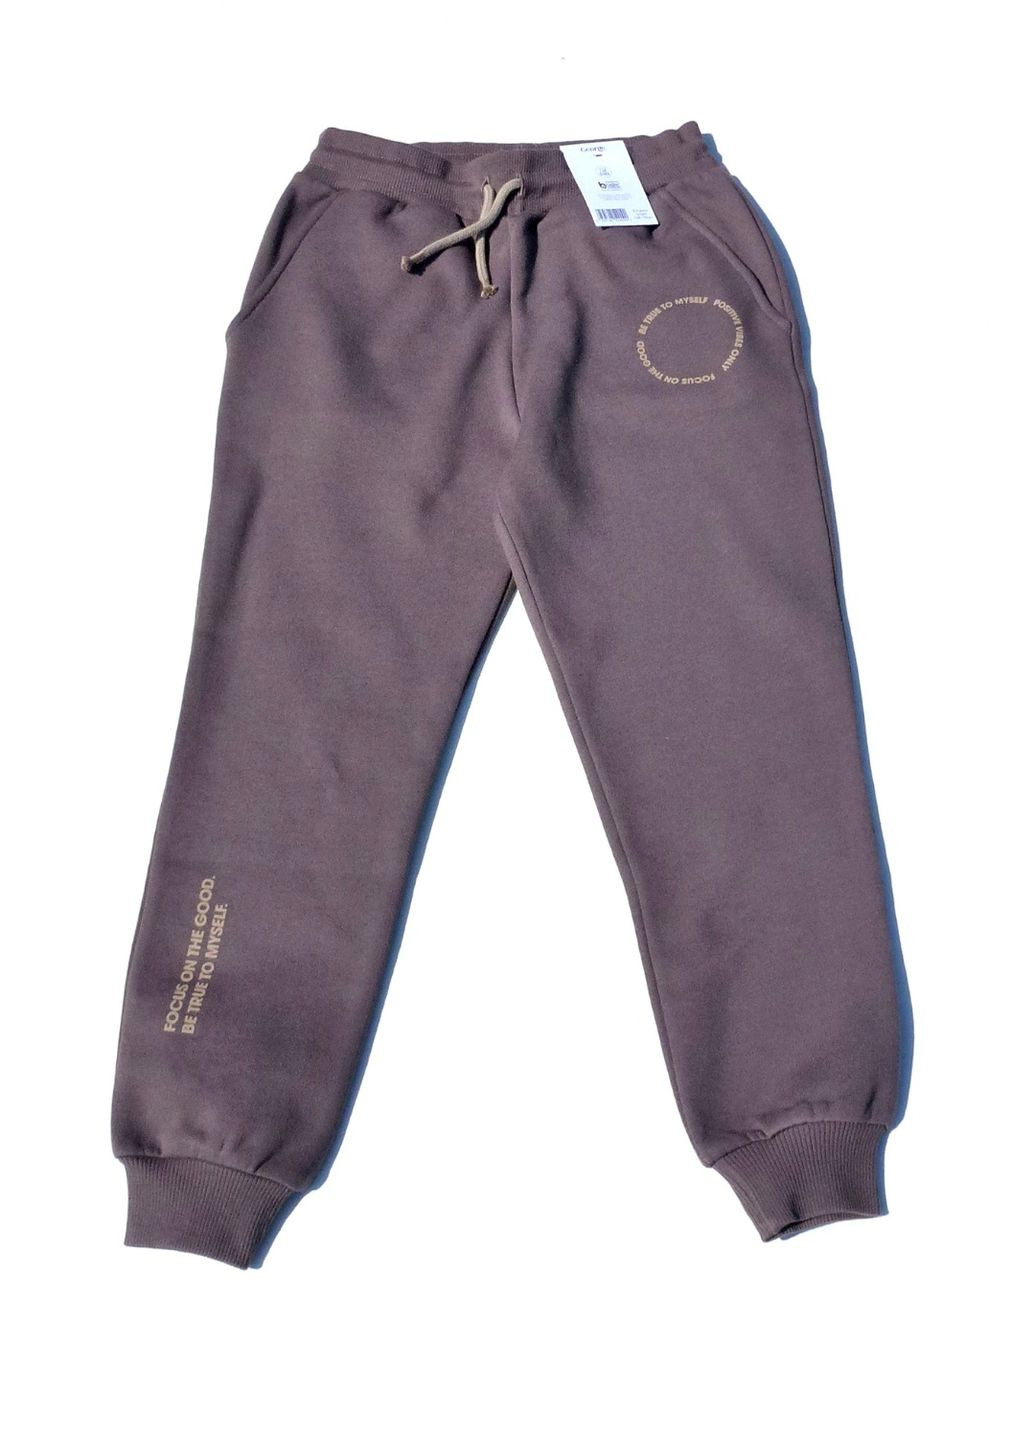 Теплый спортивный костюм (худи+штаны), цвета мокко с контрастным лого, 140-146 см George (279340956)